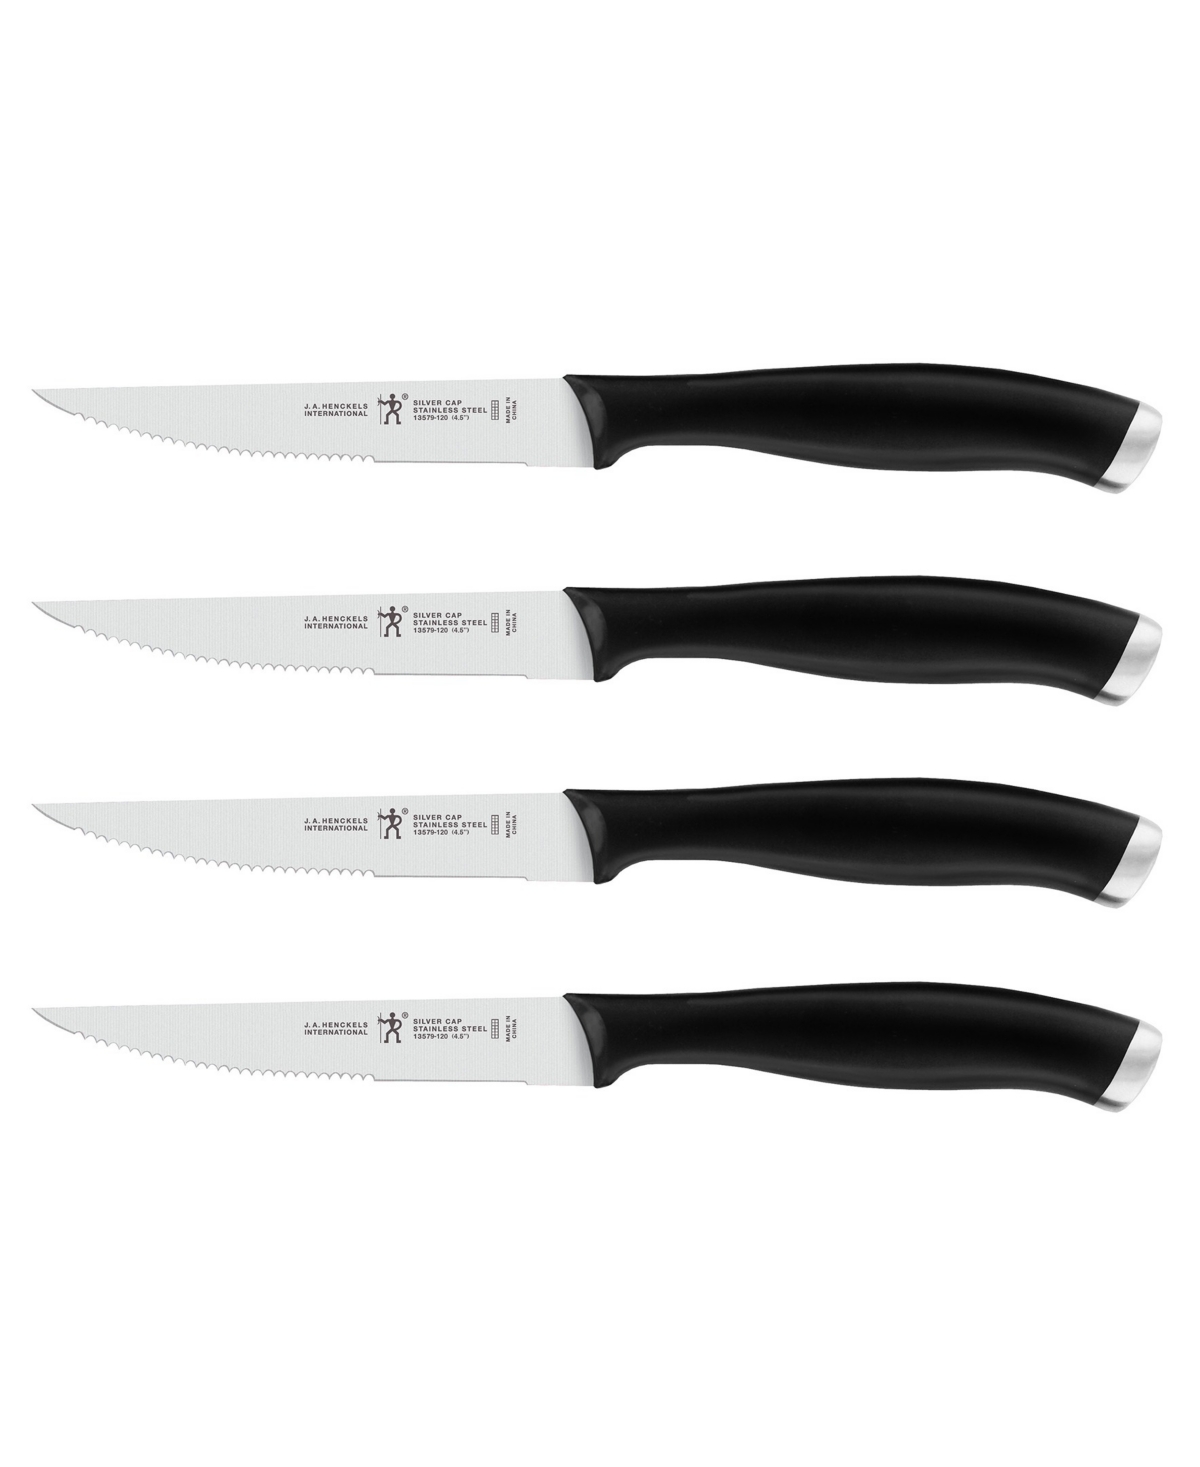 J.a. Henckels Silvercap 4-piece Steak Knife Set In Black